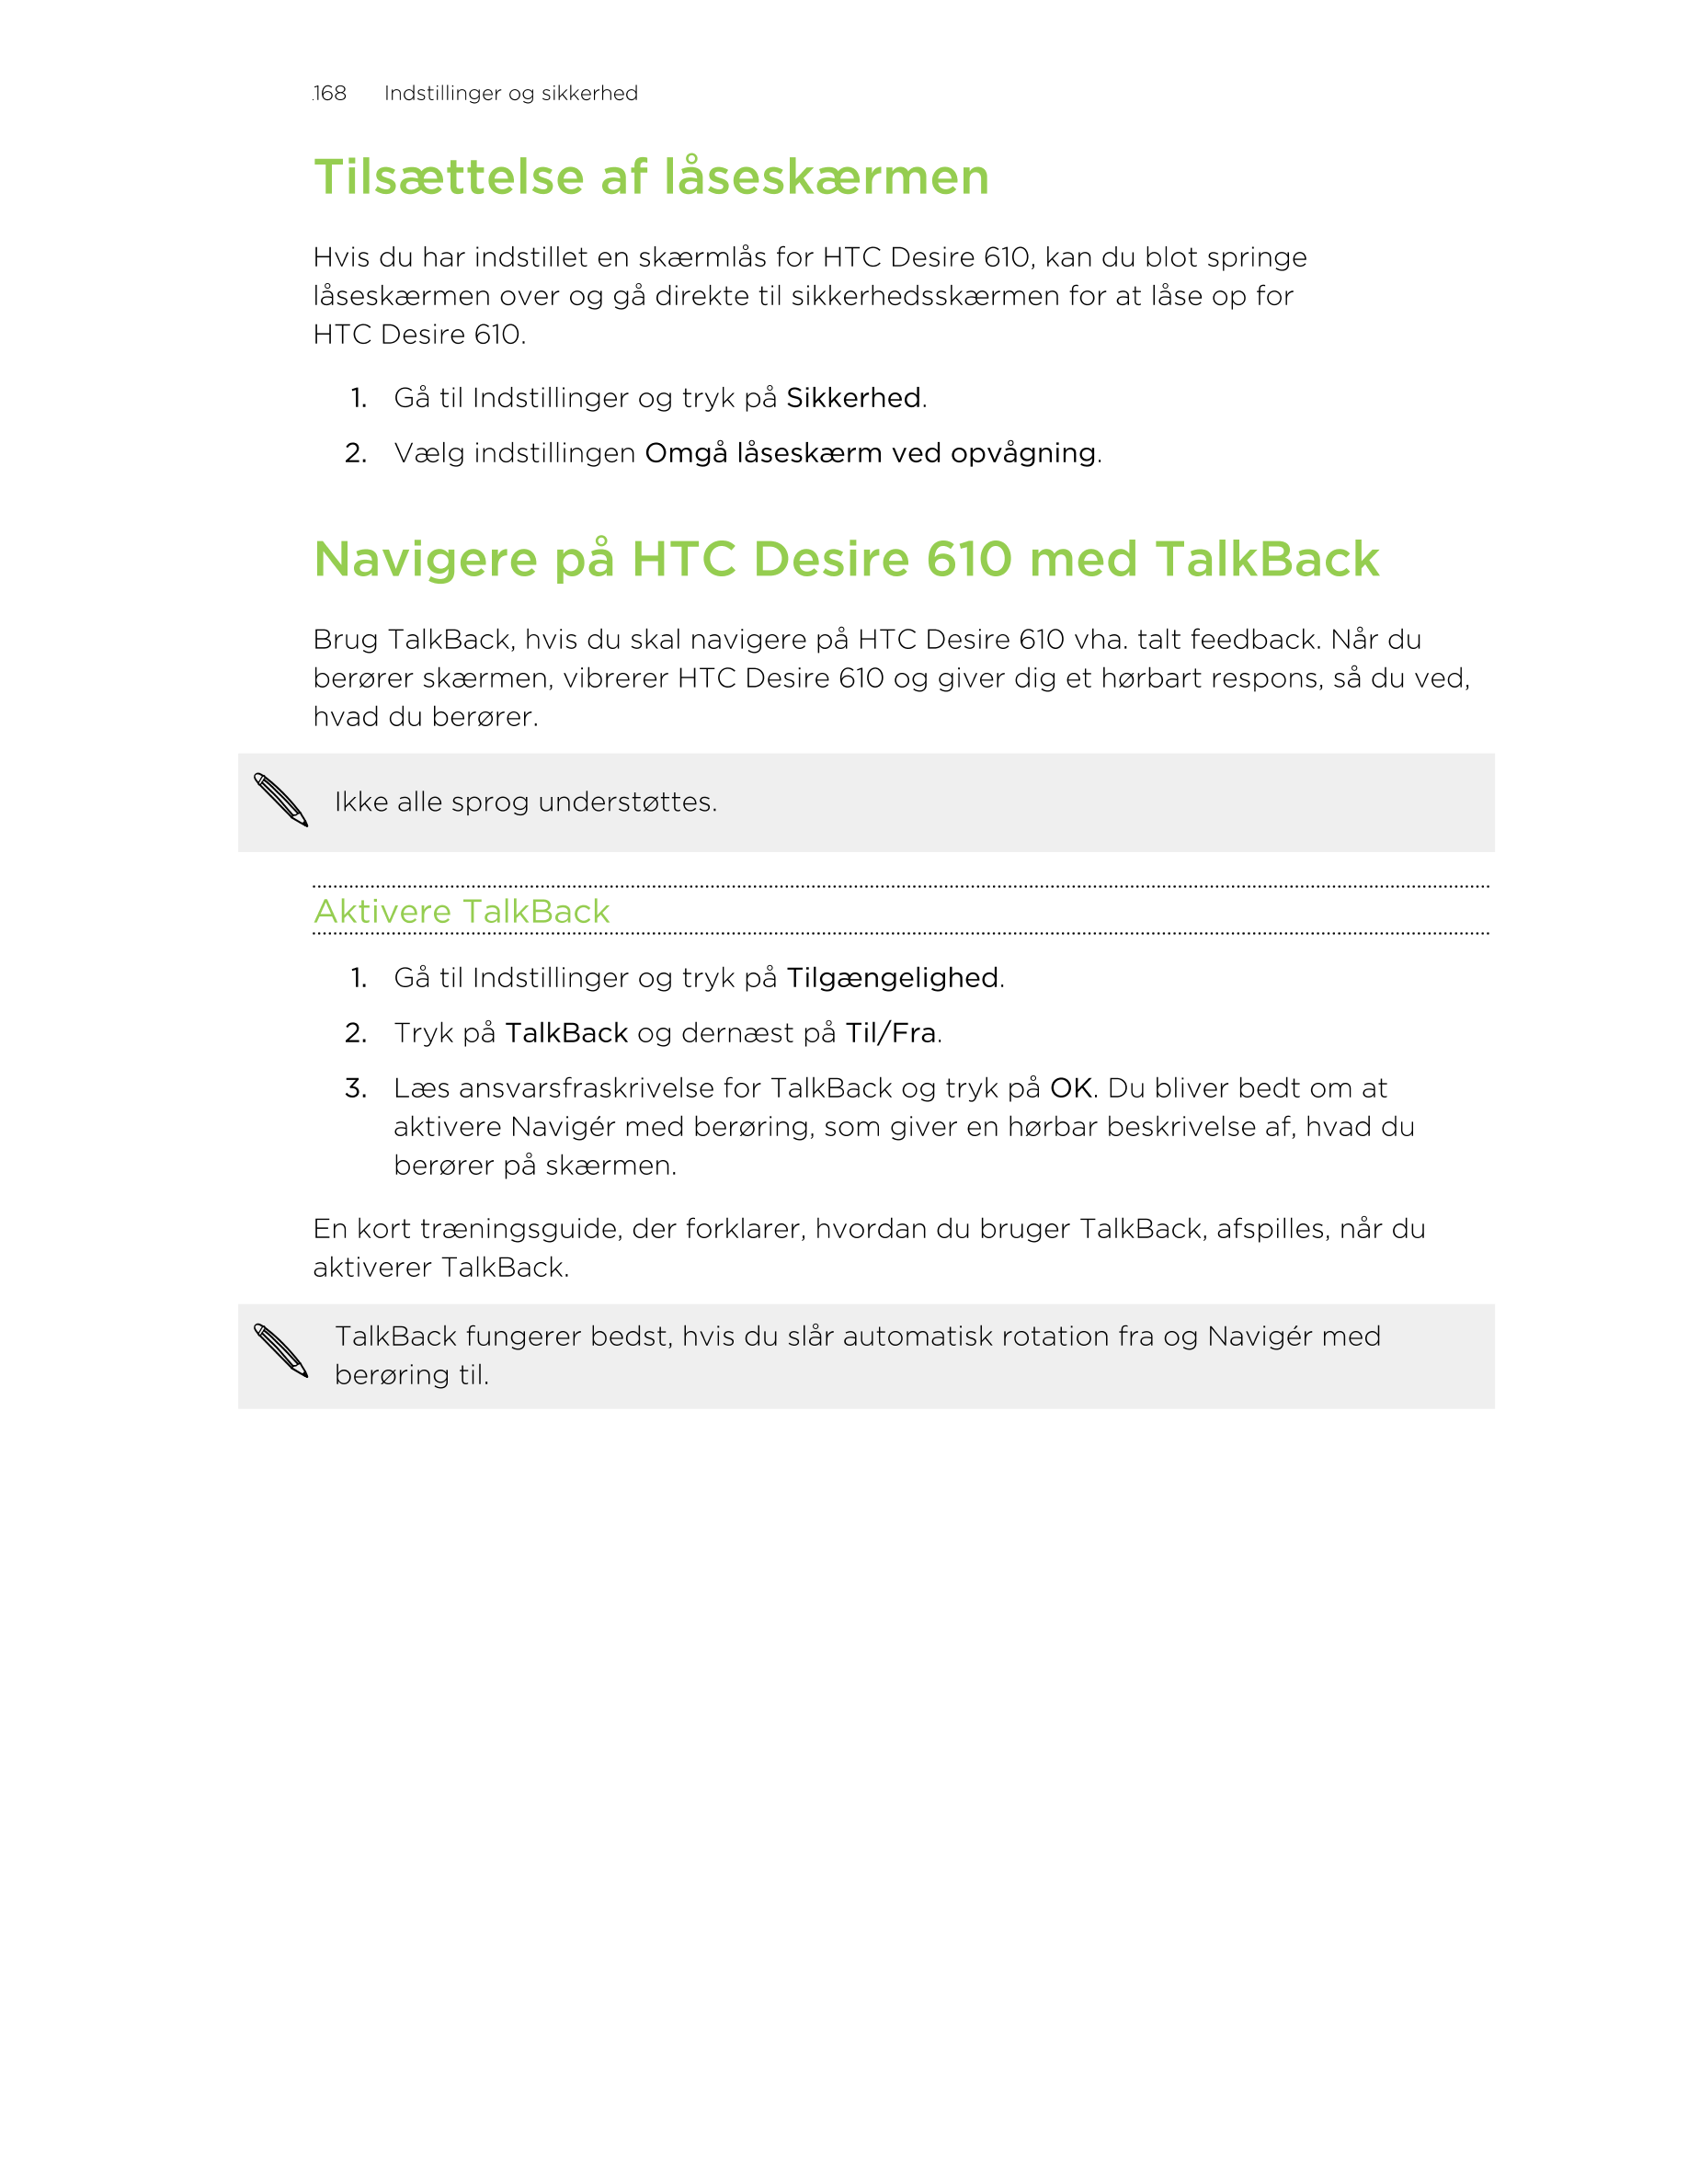 168      Indstillinger og sikkerhed
Tilsættelse af låseskærmen
Hvis du har indstillet en skærmlås for HTC Desire 610, kan du blo